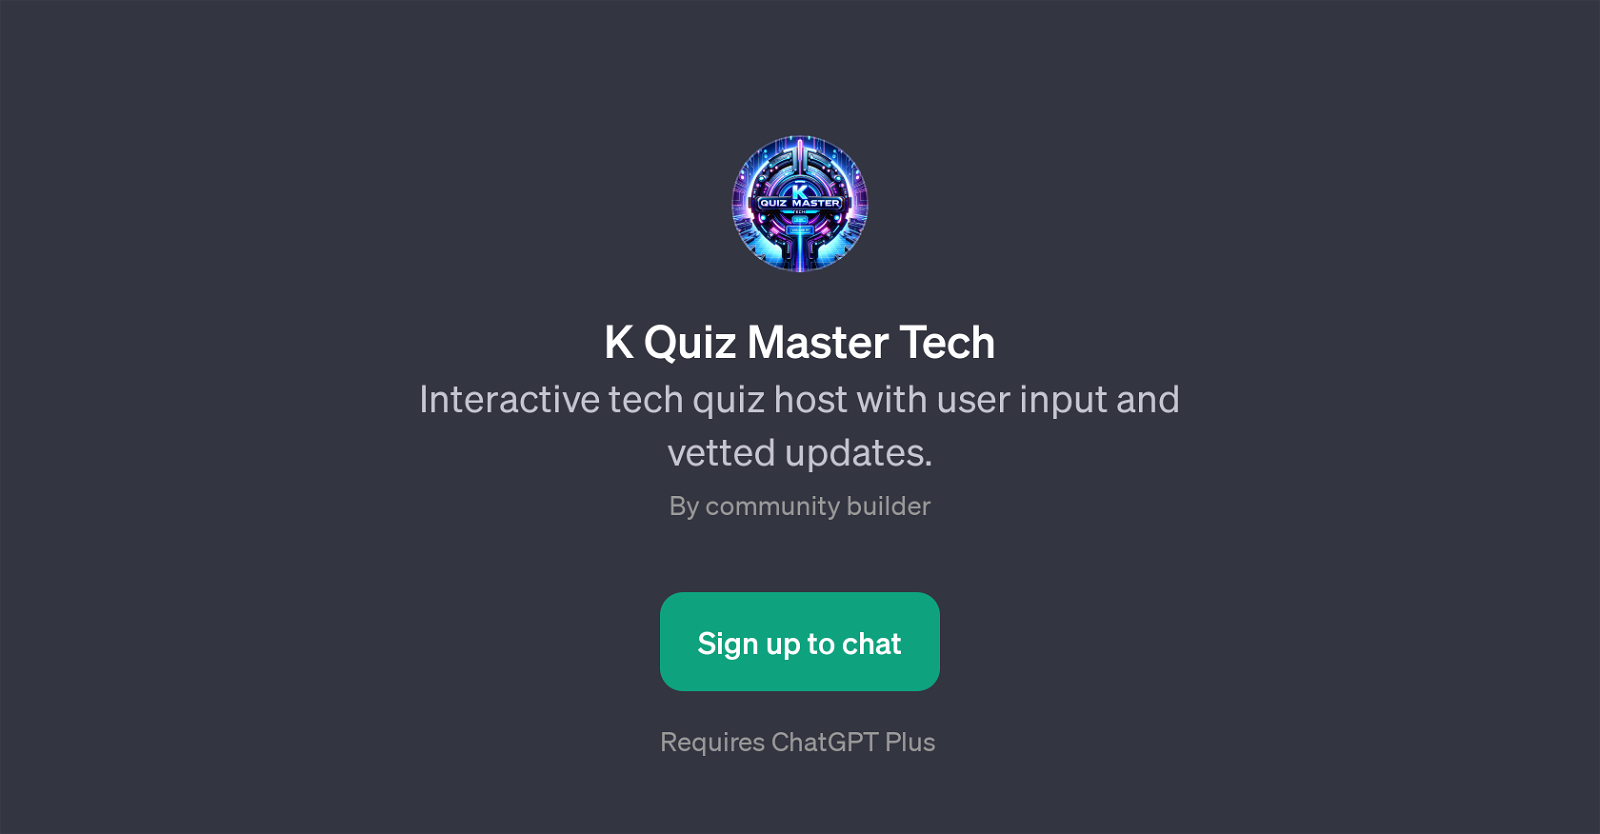 K Quiz Master Tech website